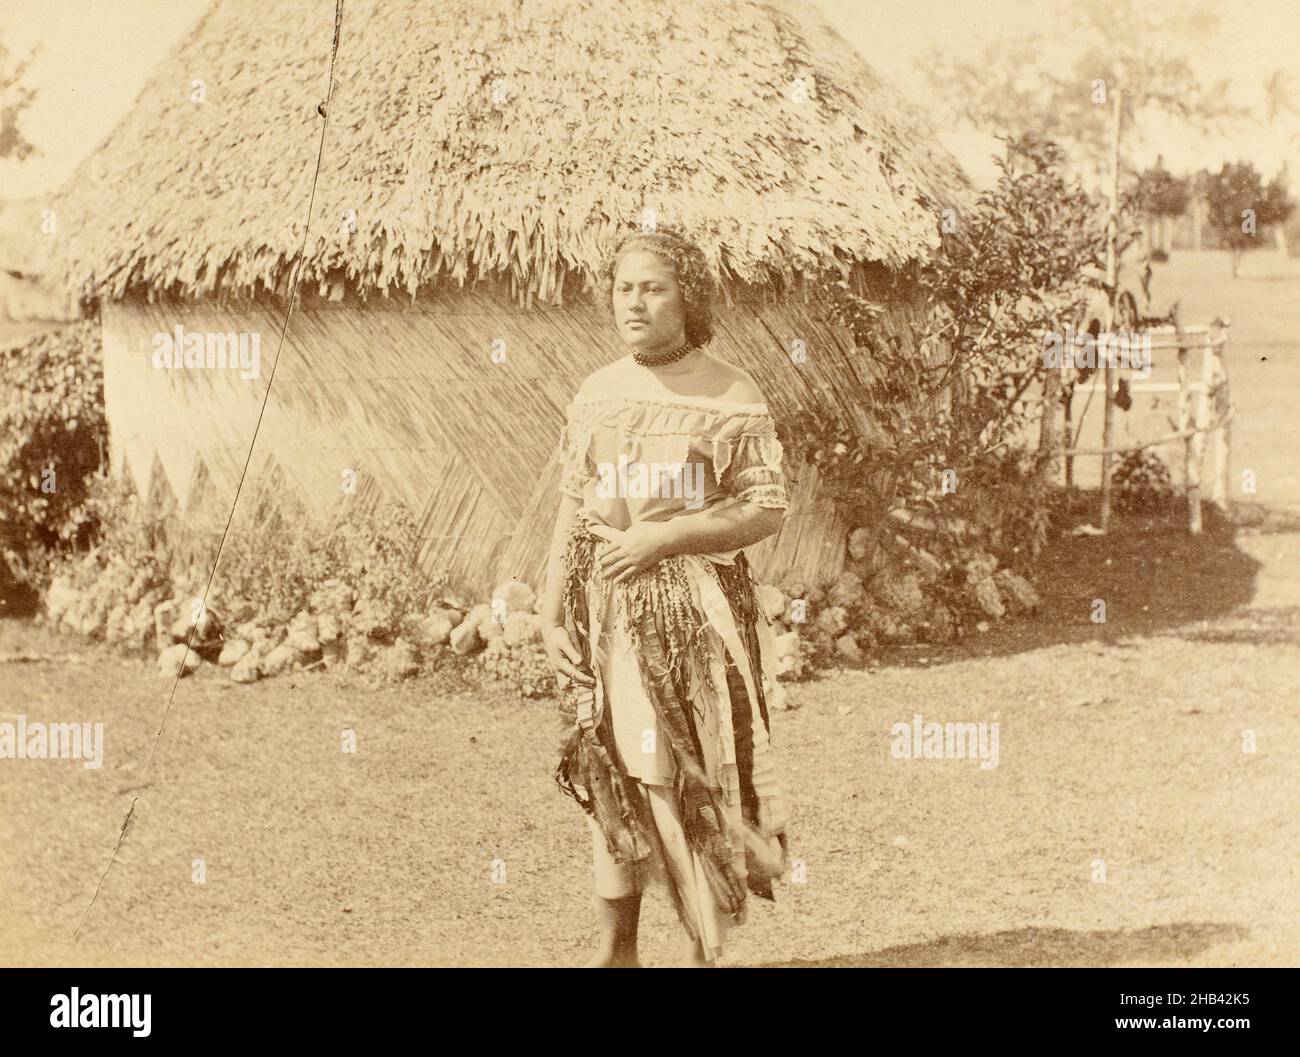 Une belle de Tongan, Nukualofa [Nuku'alofa].De l'album: New Zealand Views, Burton Brothers studio, studio de photographie, 1884, Dunedin,photographie en noir et blanc Banque D'Images